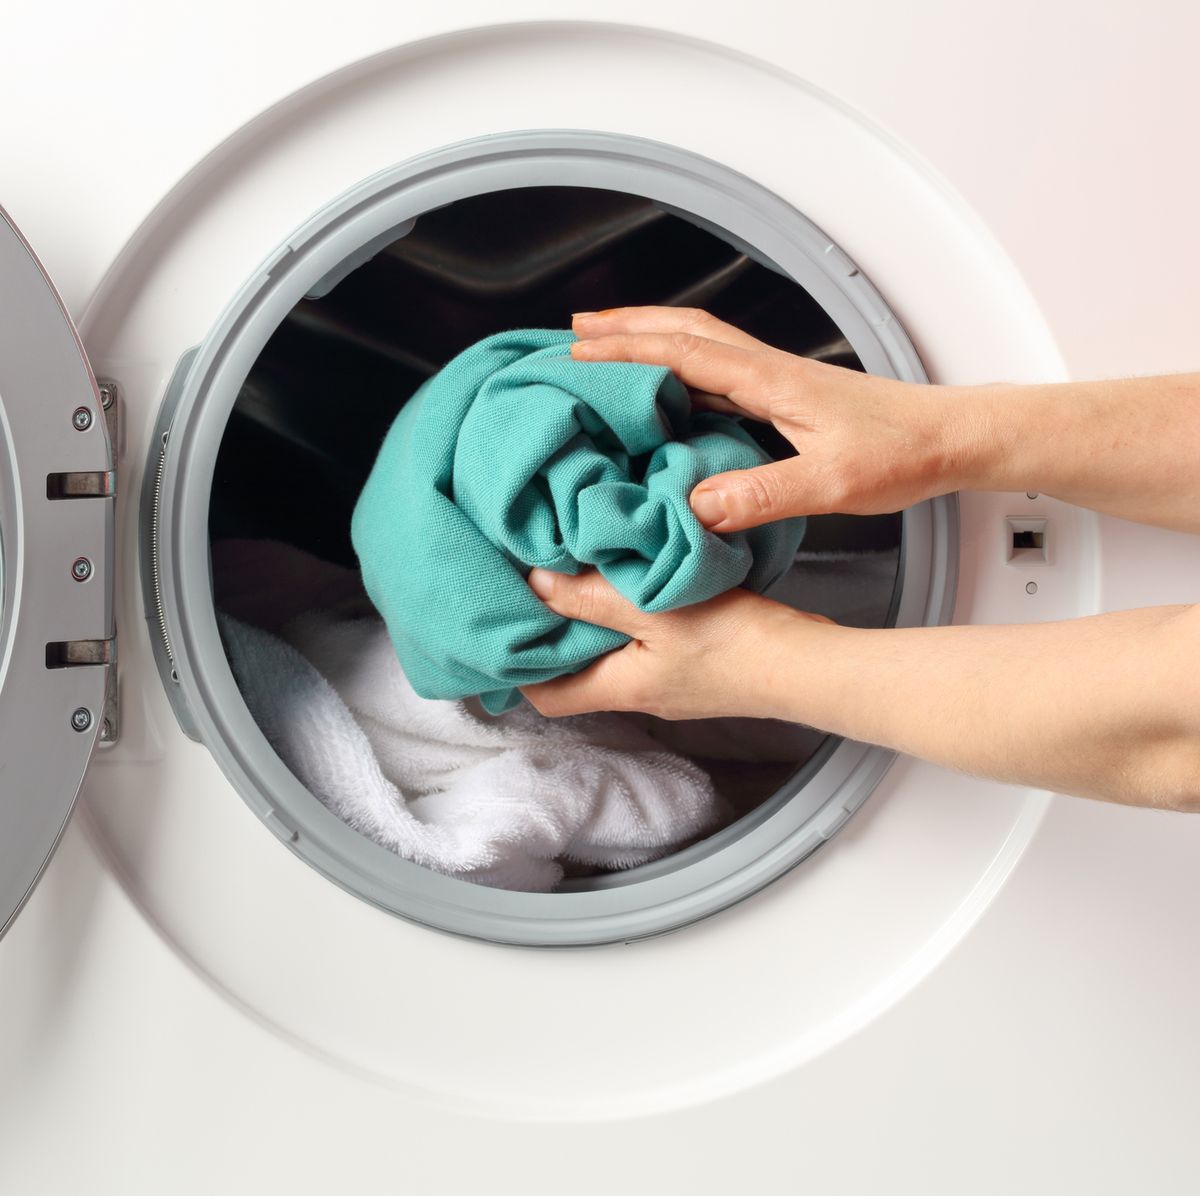 Las mejores lavadoras de carga superior que puedes comprar en 2021